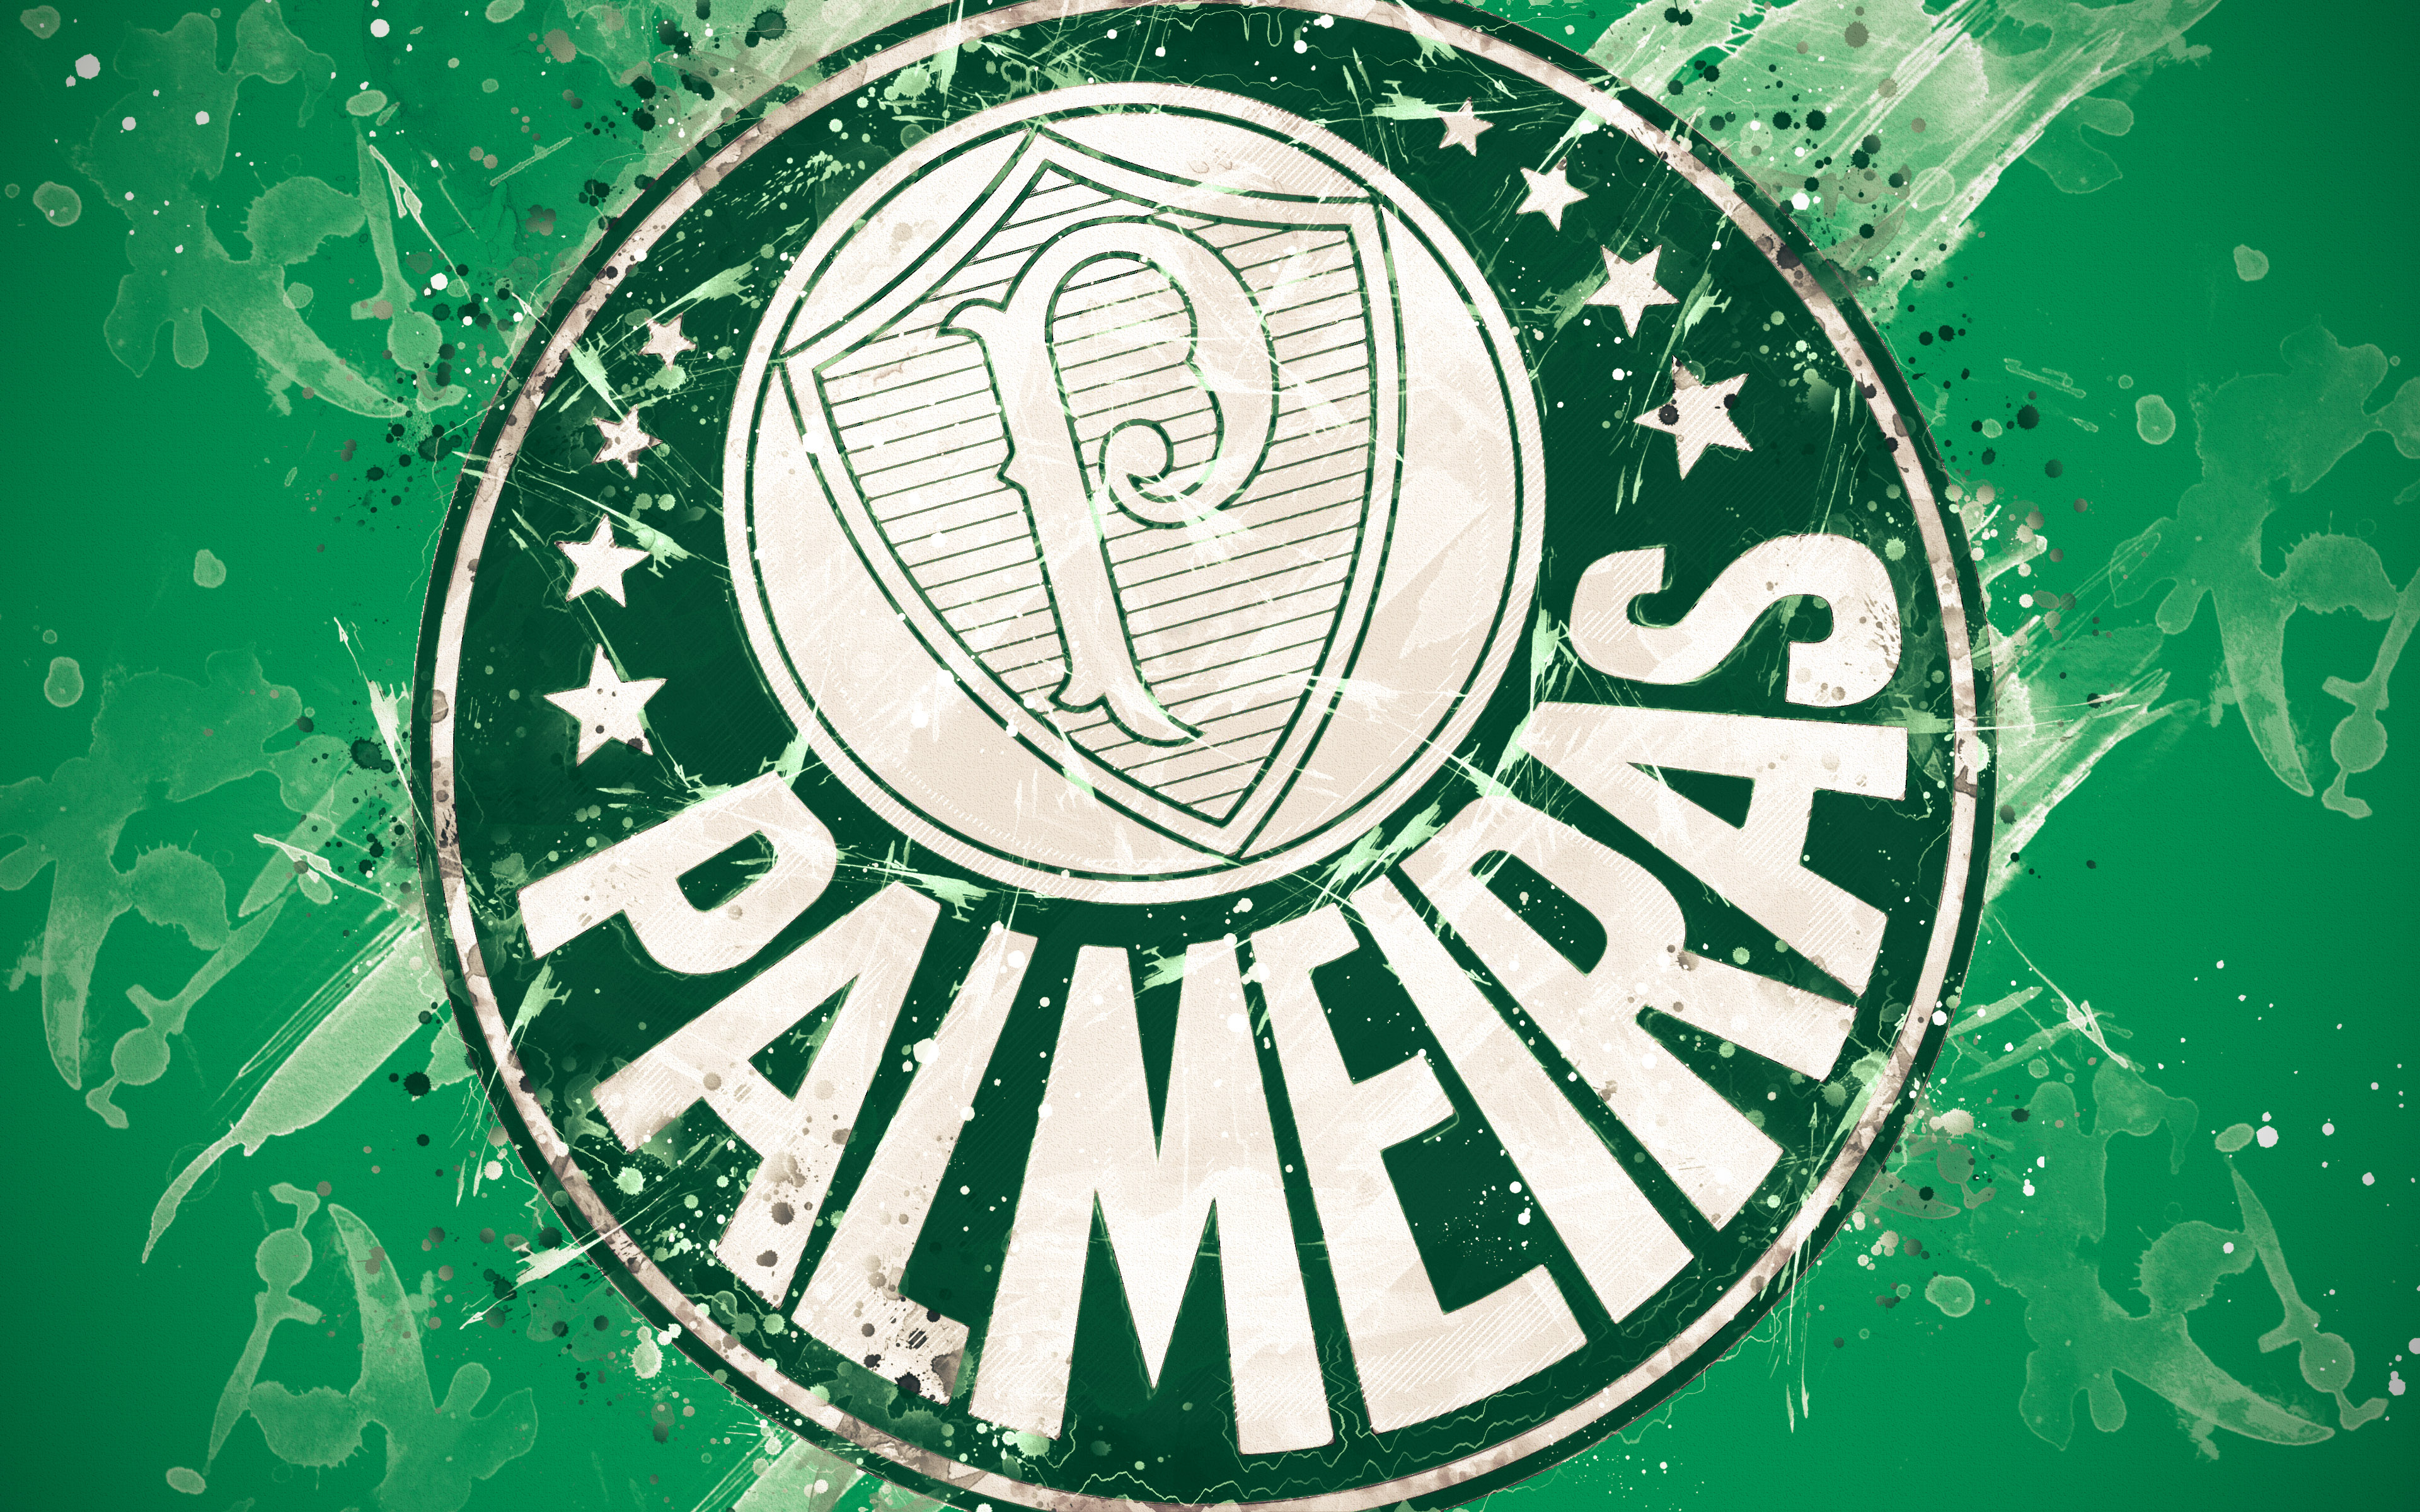 Sports Sociedade Esportiva Palmeiras HD Wallpaper | Background Image